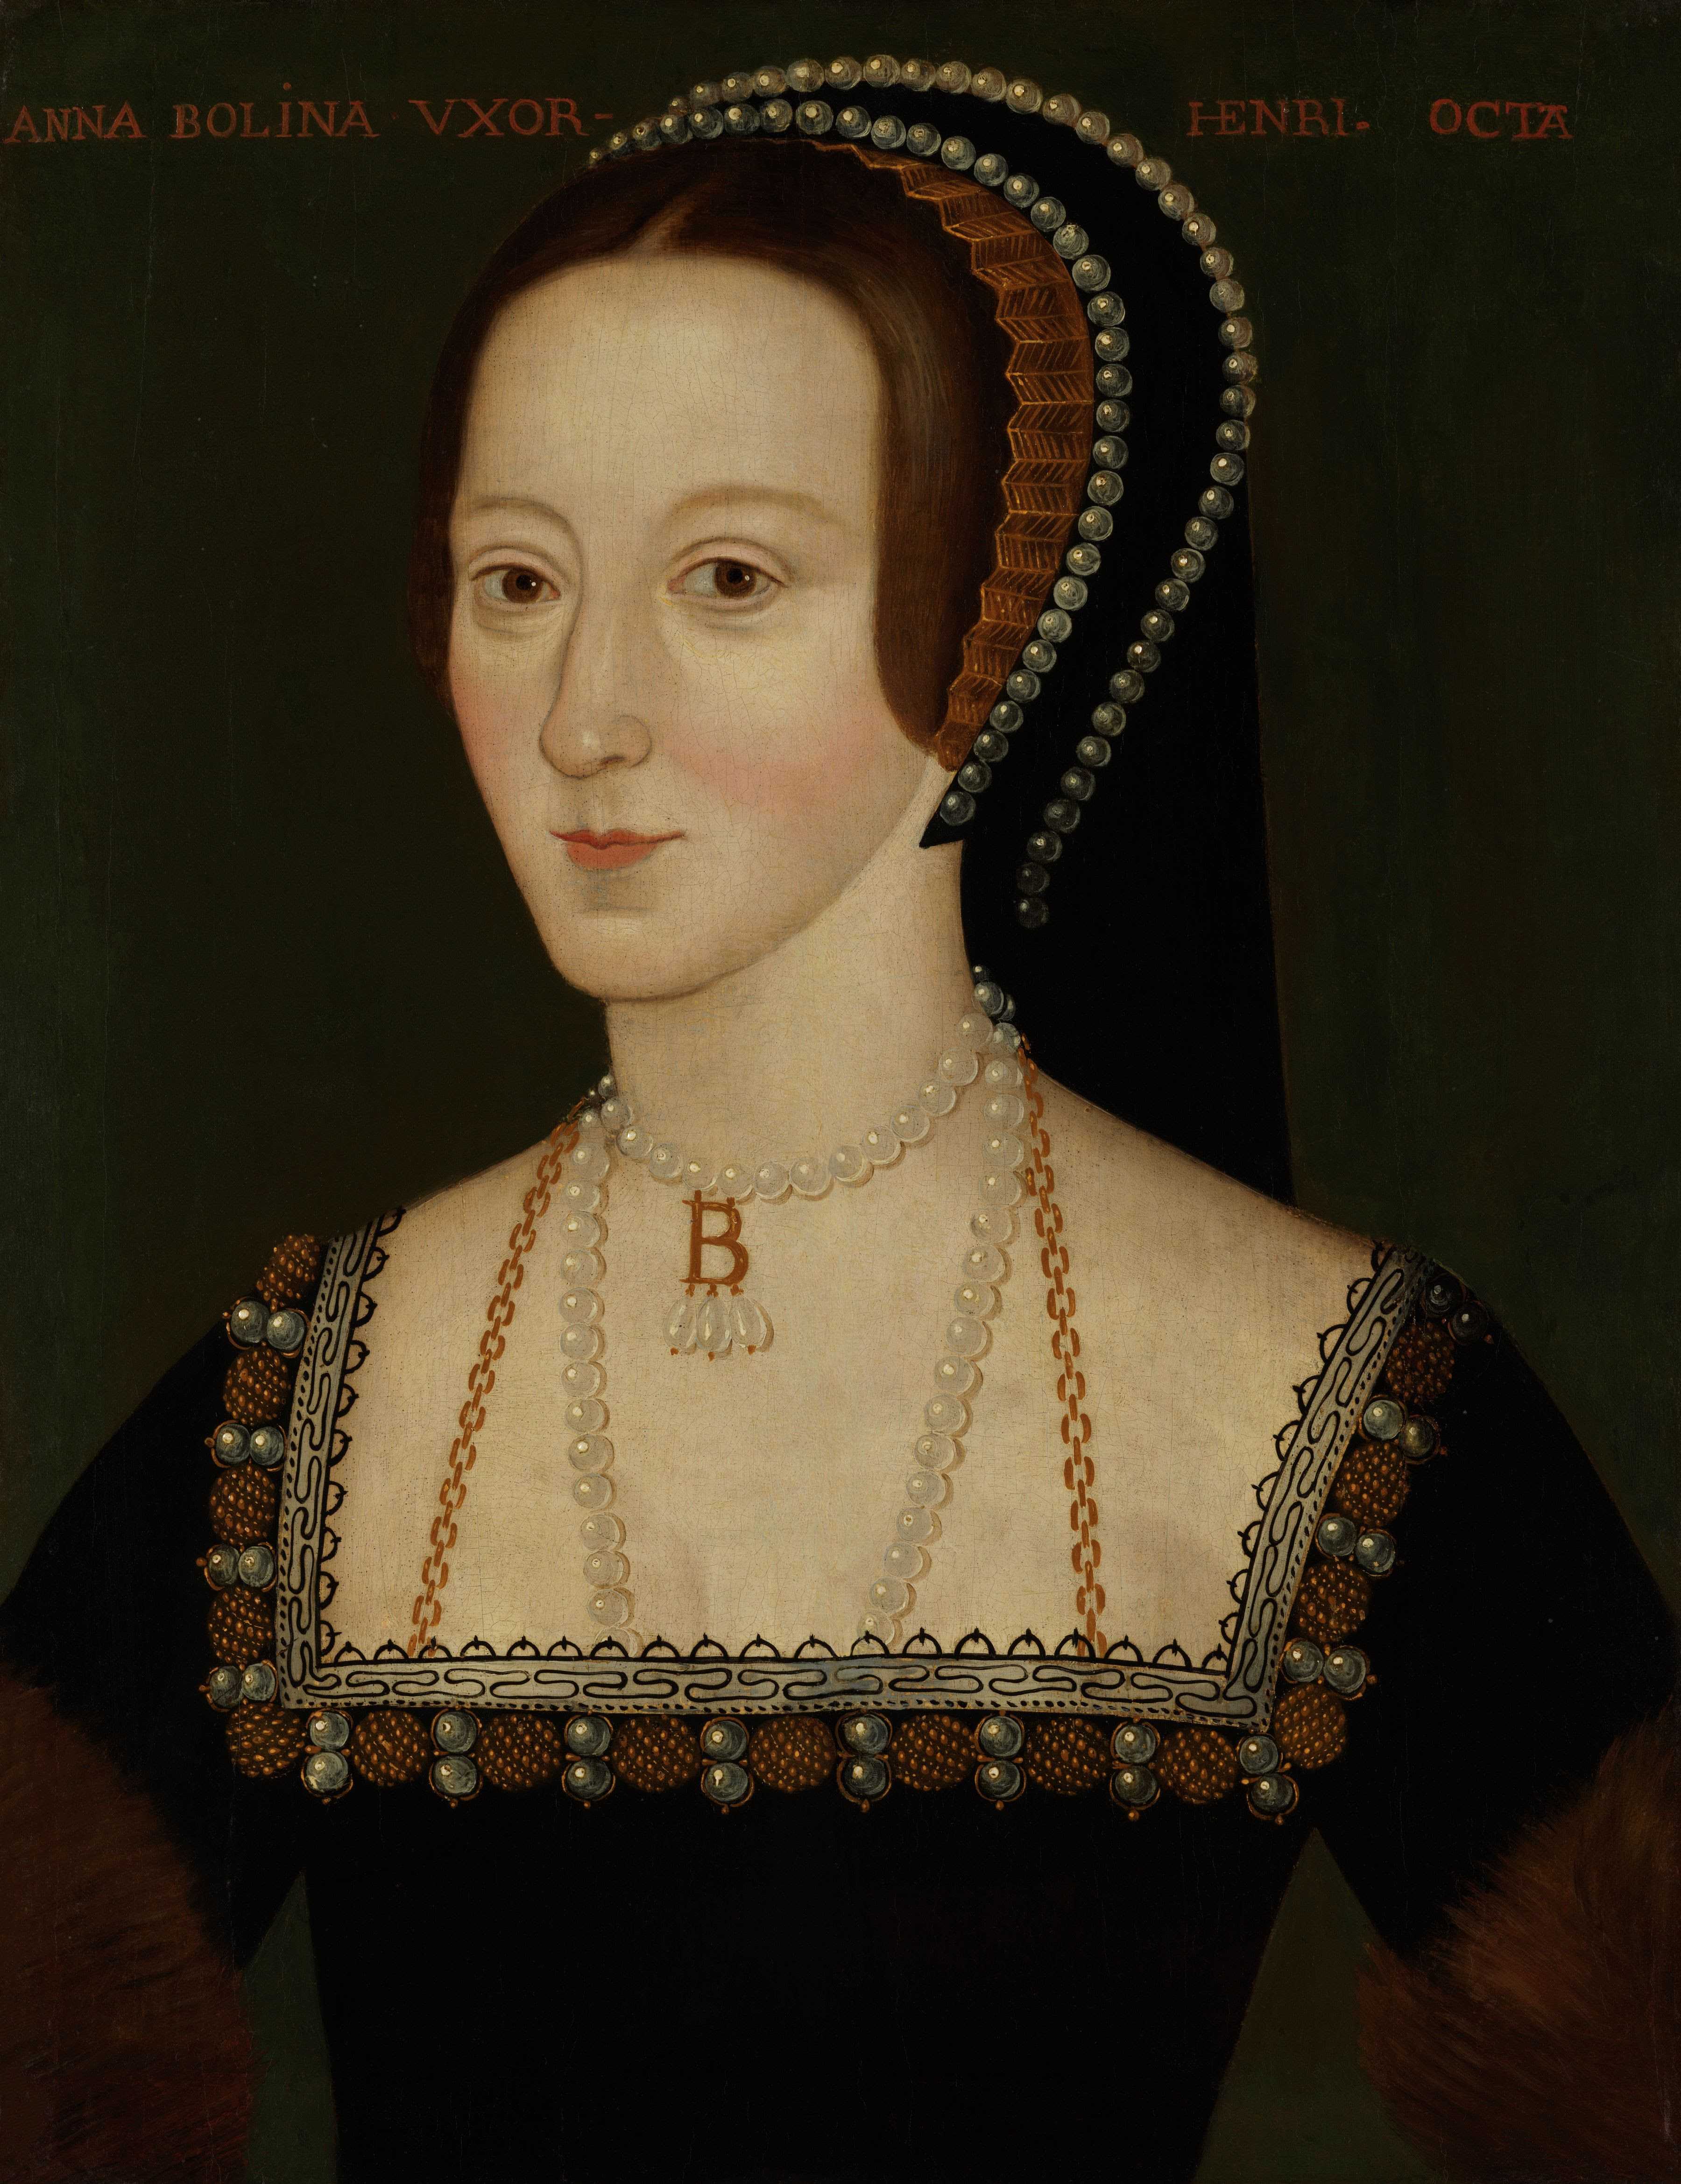 L-R: Anne Boleyn by Unknown English Artist, late 16th century © National Portrait Gallery London